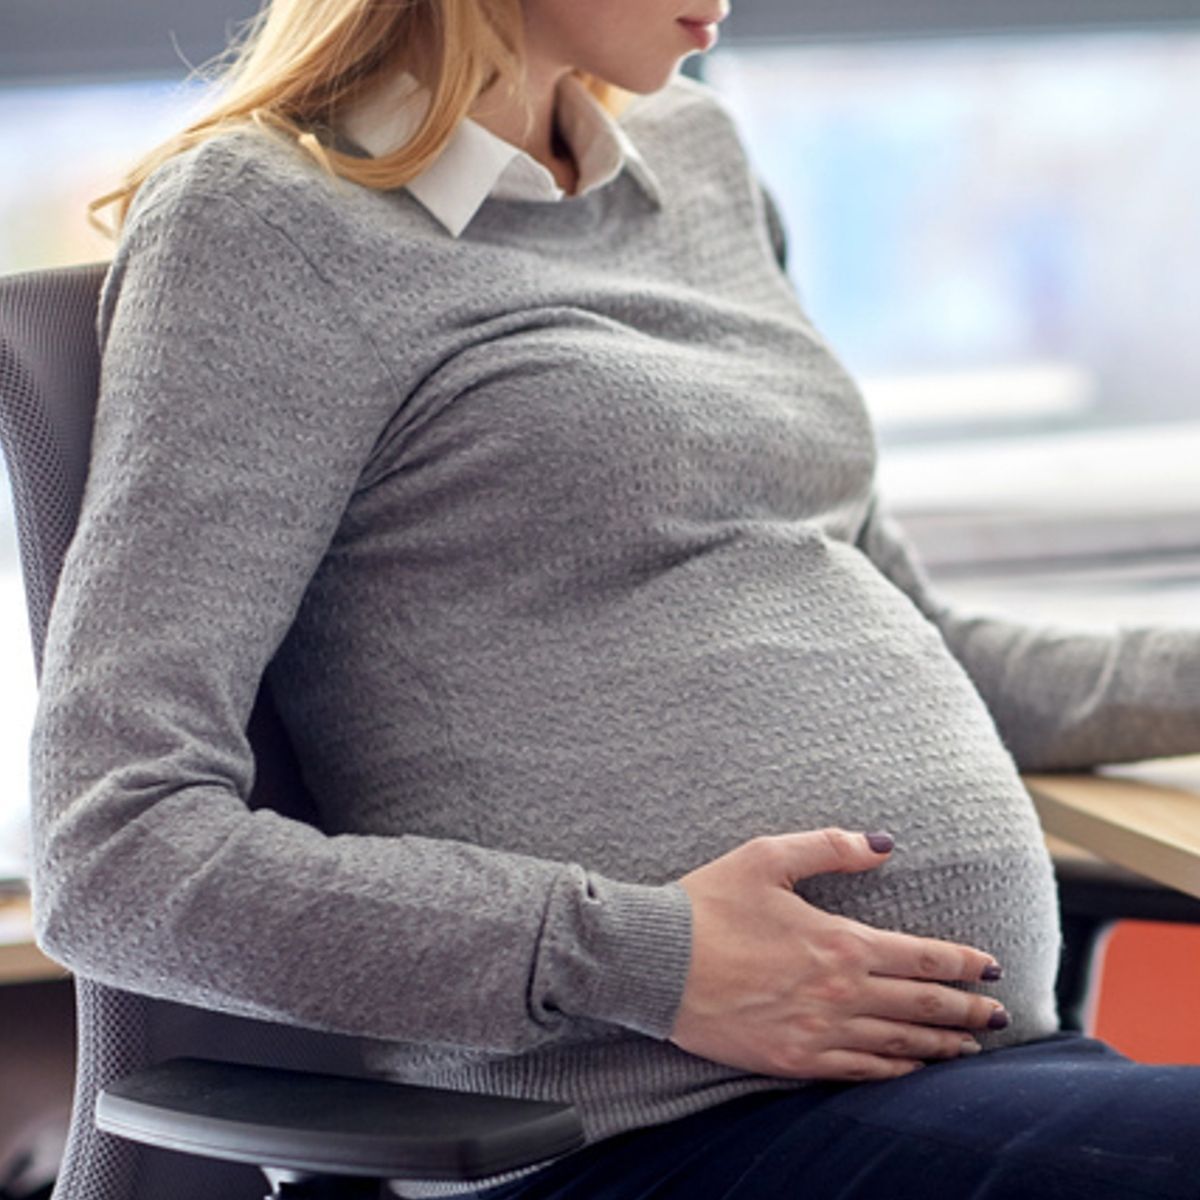 Travailler pendant la grossesse est-il sécuritaire ?